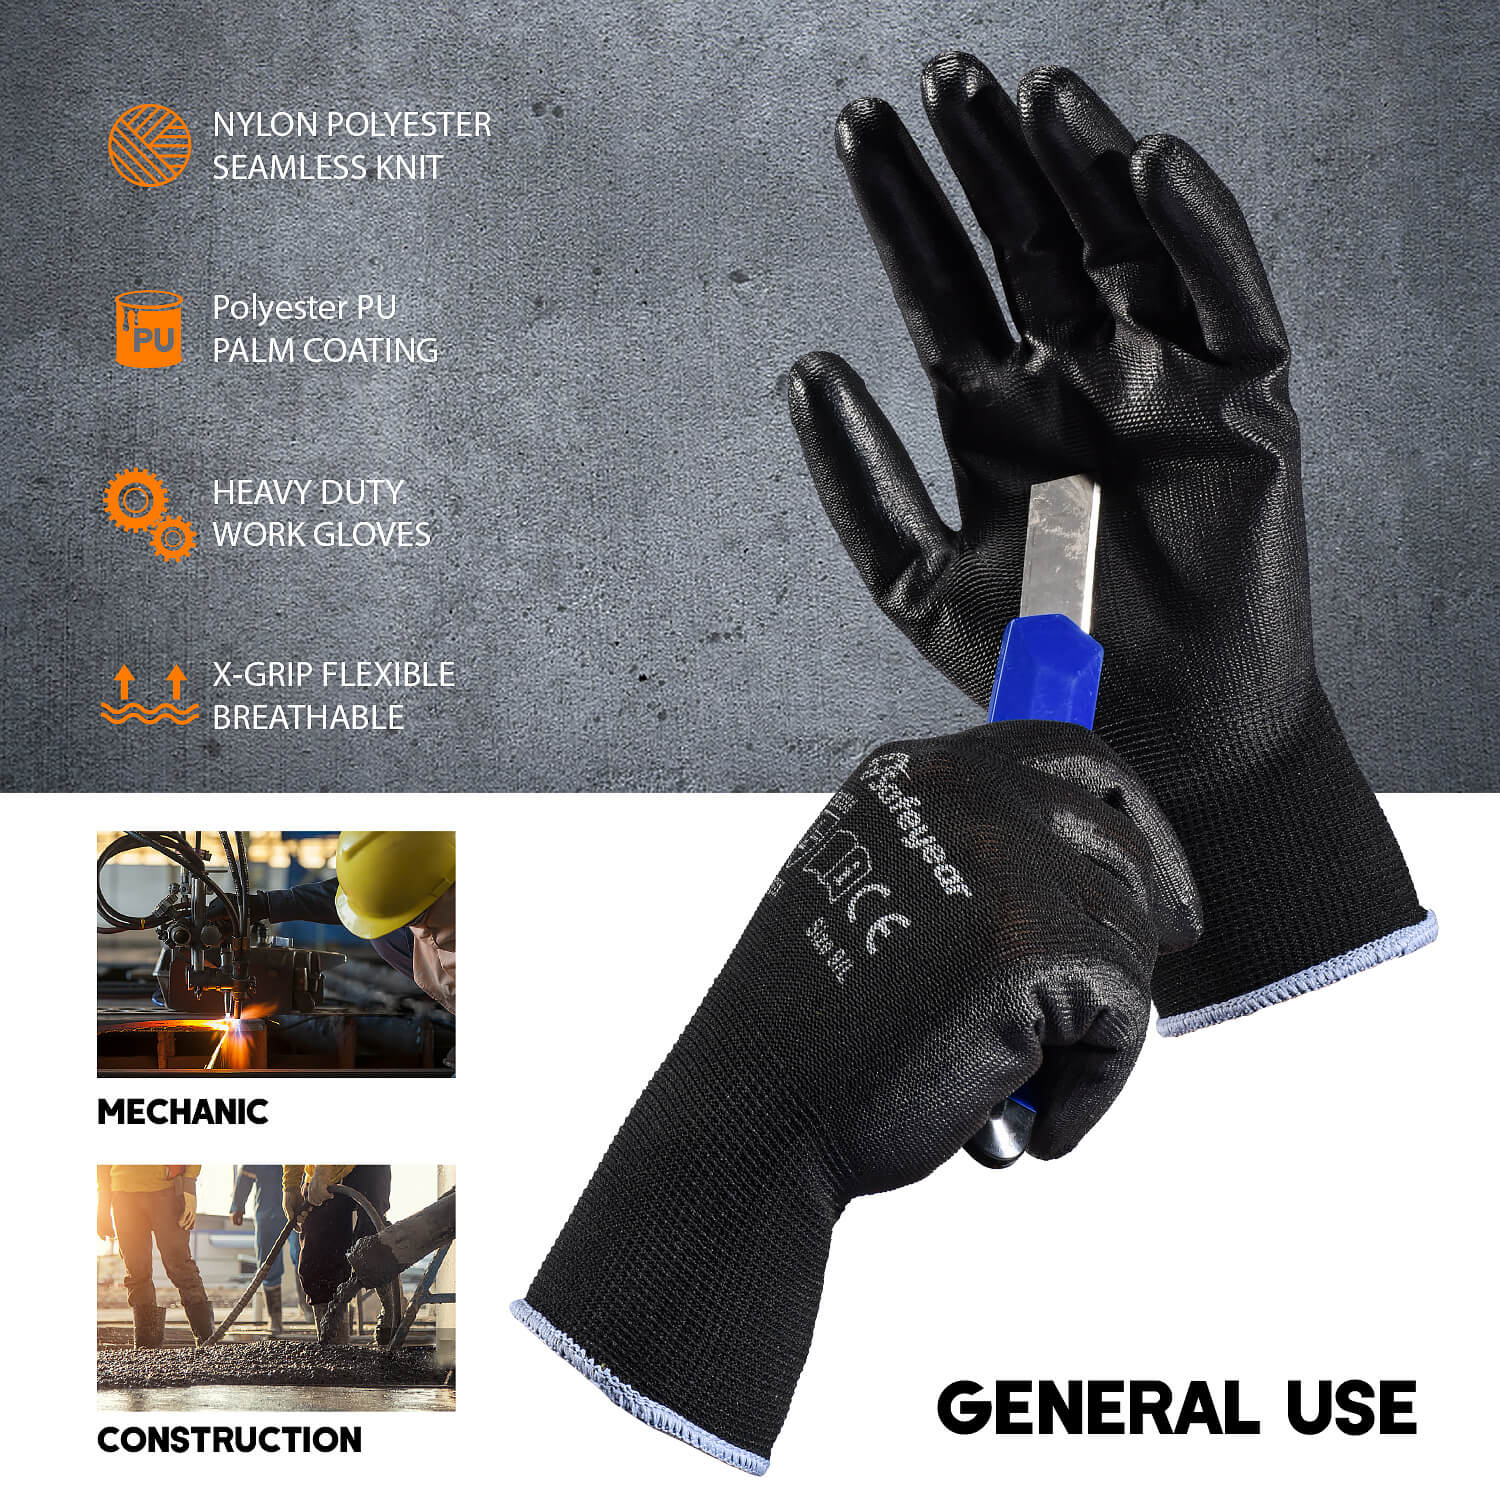 PU, покрытый трудоустройством, перчатки для обеспечения безопасности ZHXPU225B 